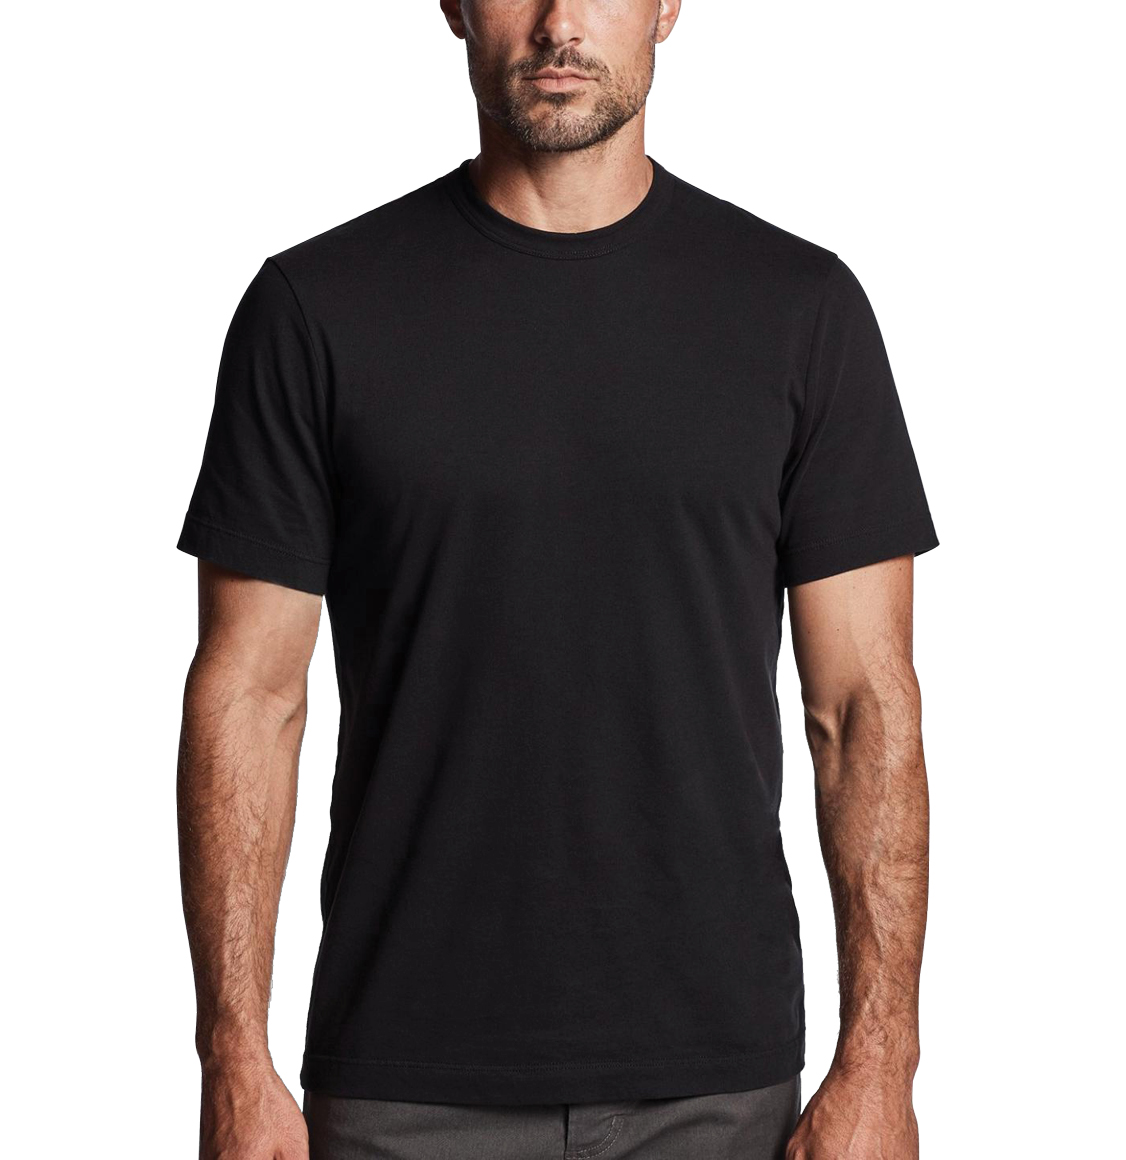 The Project Garments Crewneck Cotton Tailor Fit T-shirt Black